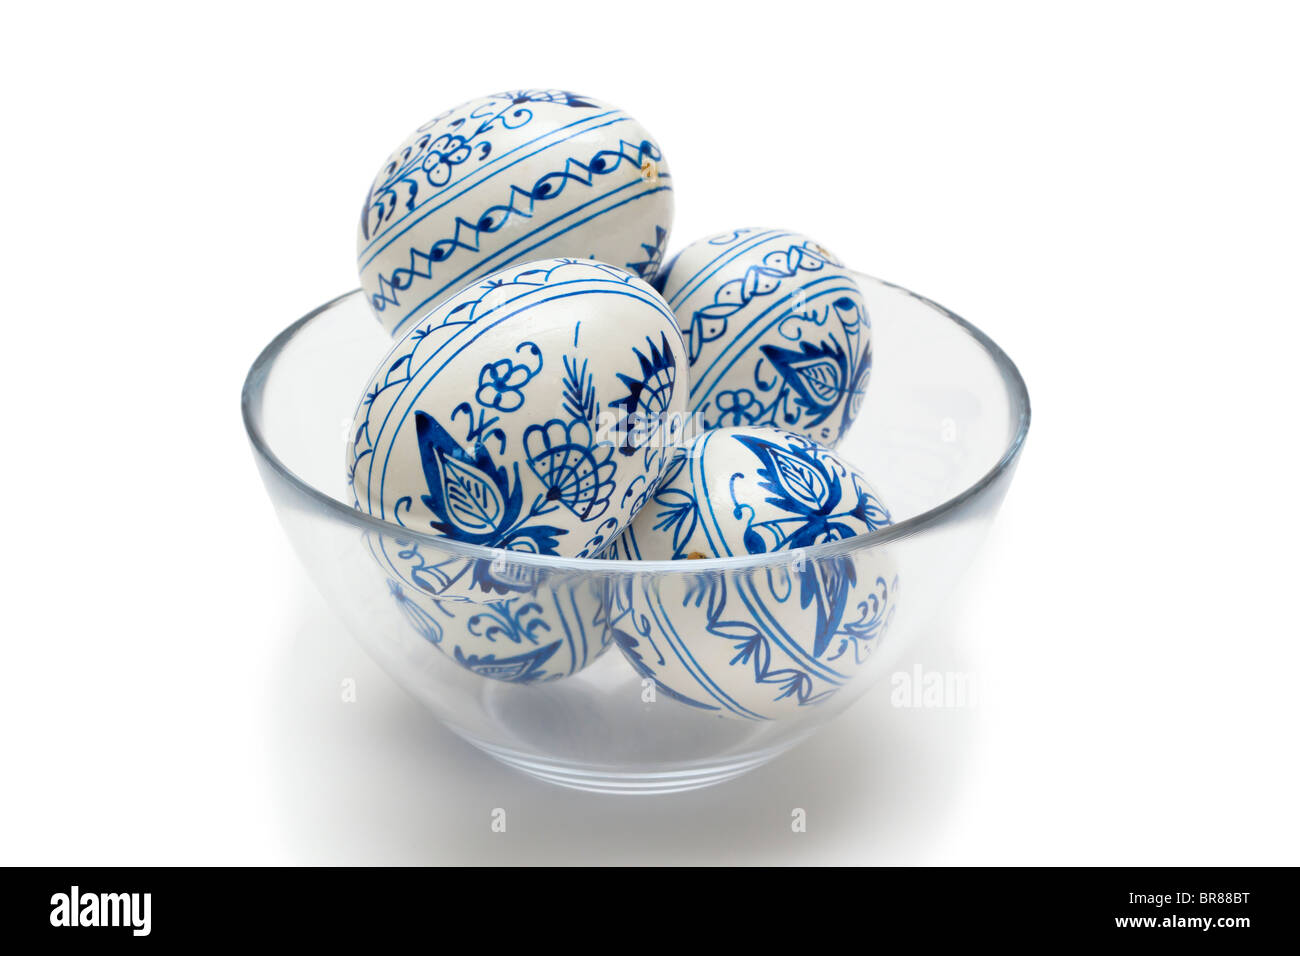 Peint en bleu et blanc traditionnelle des oeufs de Pâques dans un bol en verre Banque D'Images